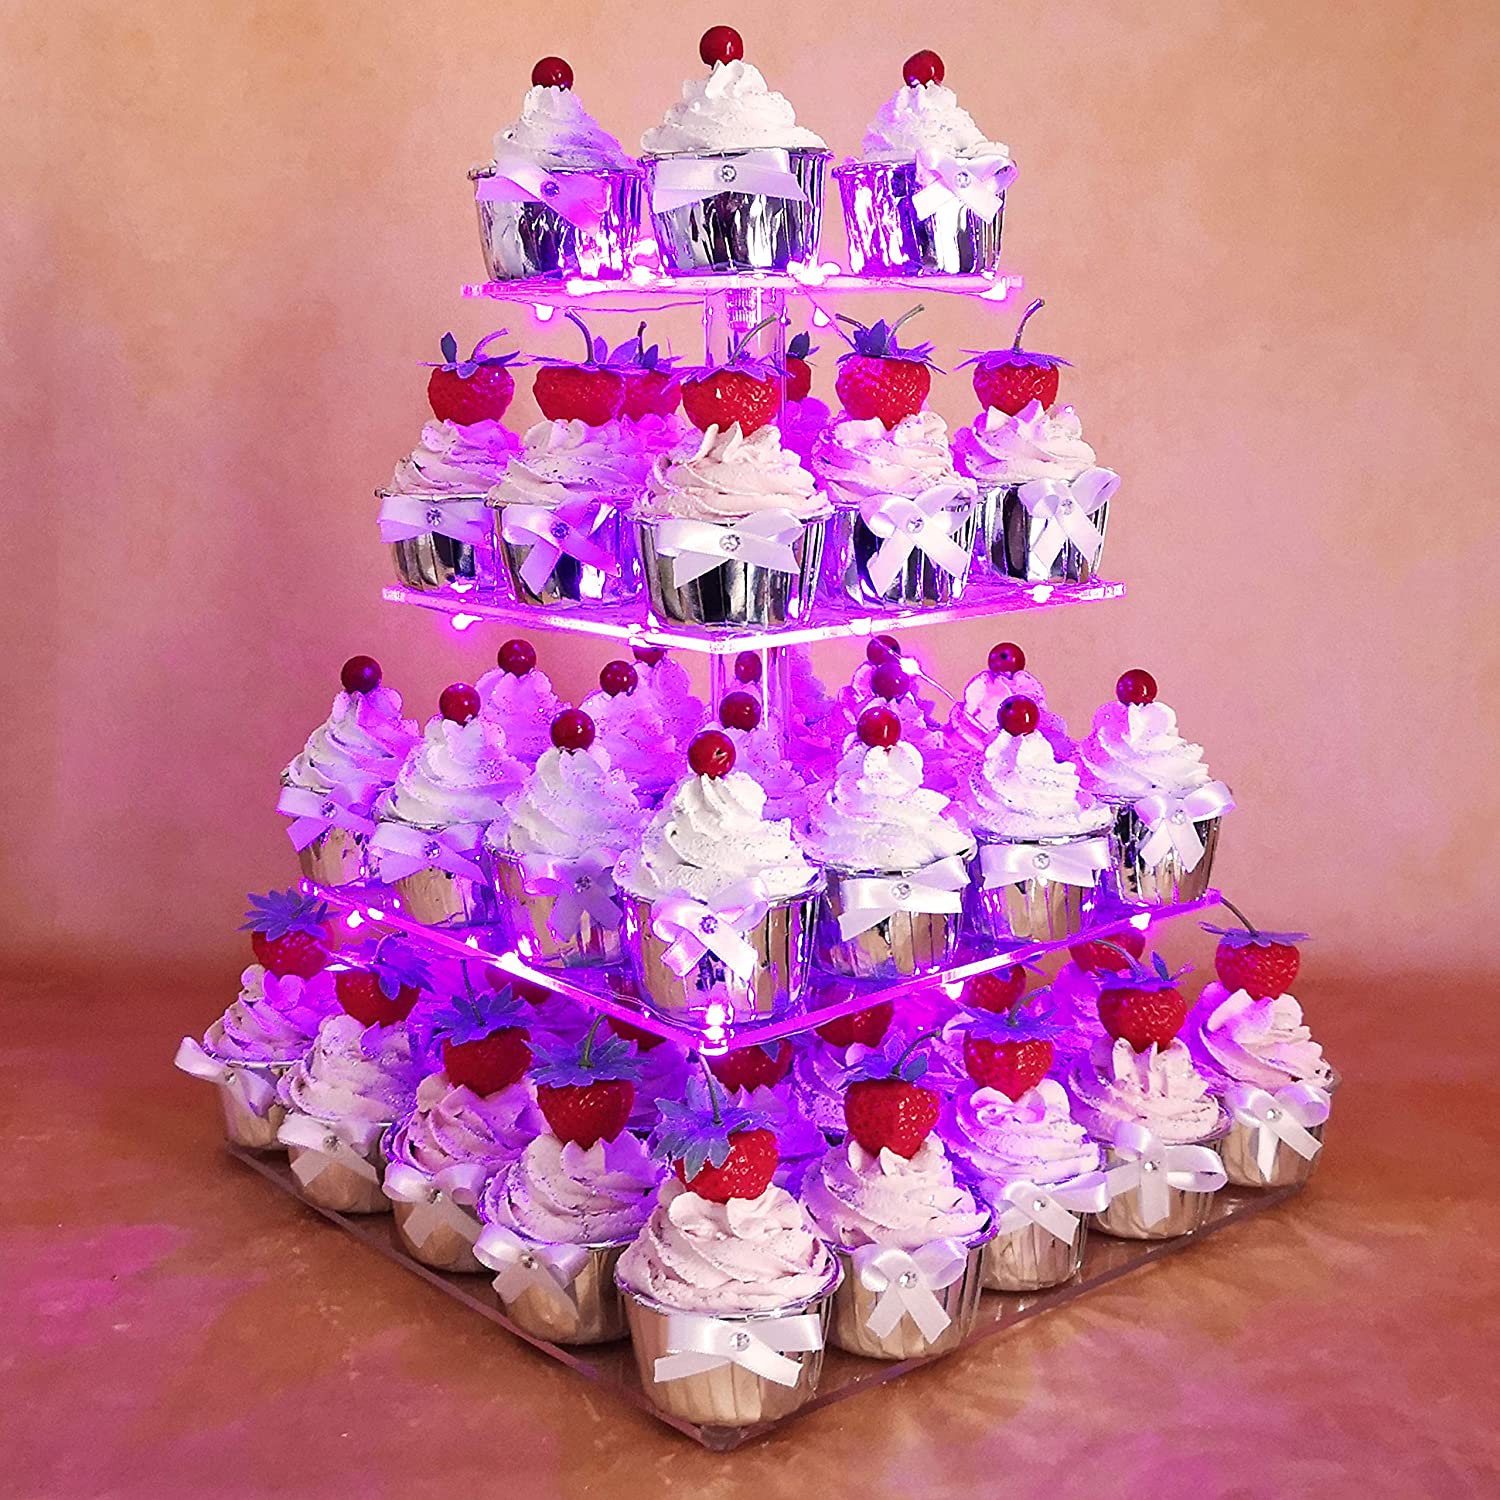 4 patrový stojan na dorty, cupcaky s lila LED světelným řetězem